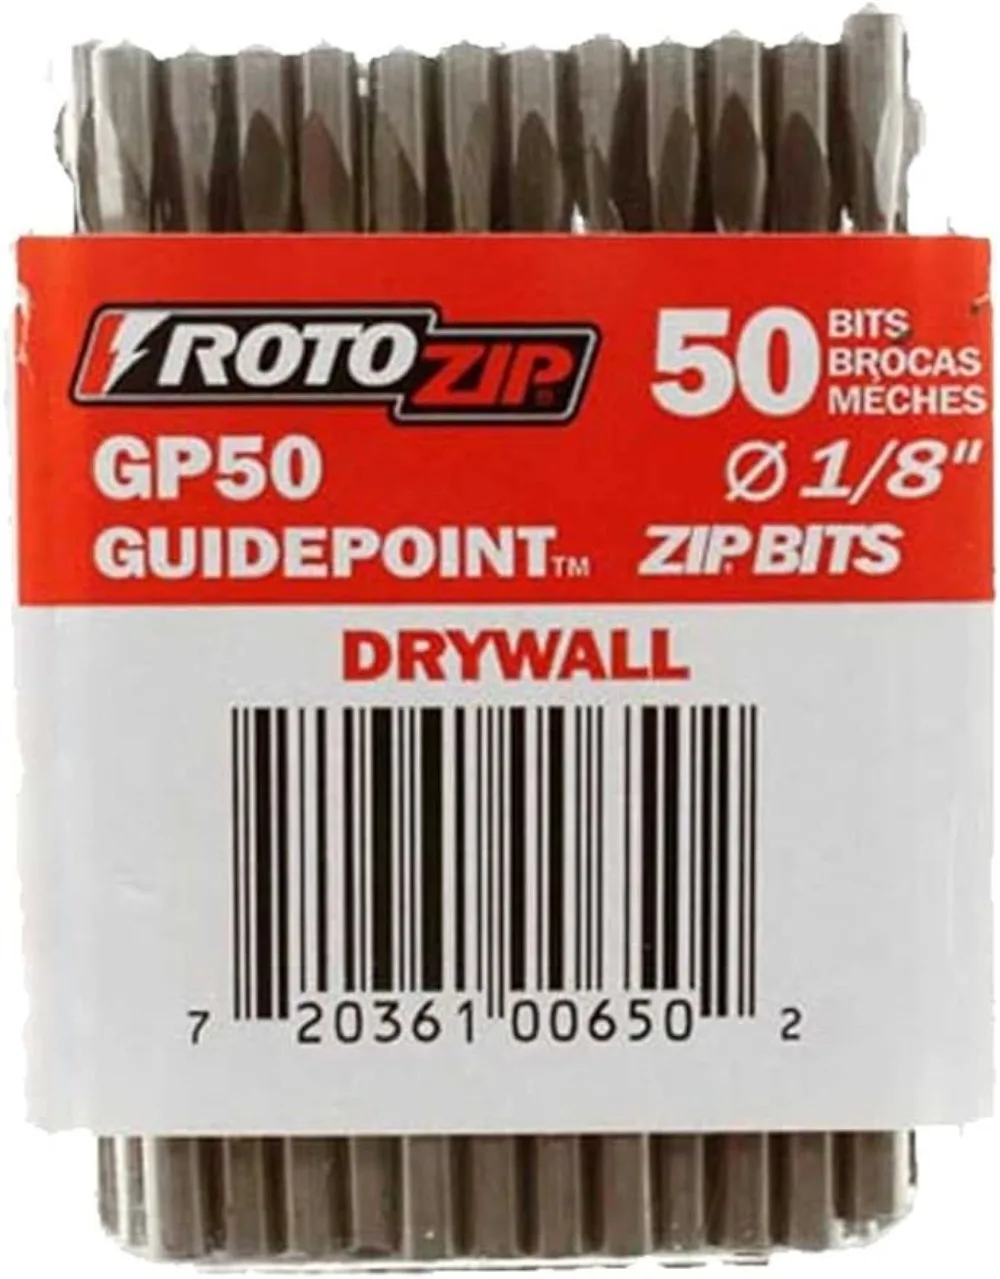 

RotoZip GP50 2,5-дюймовые направляющие для гипсокартона, режущие сверла (50 шт. в упаковке), режущие гипсокартоны, для использования с Roto Zip спиральная пила